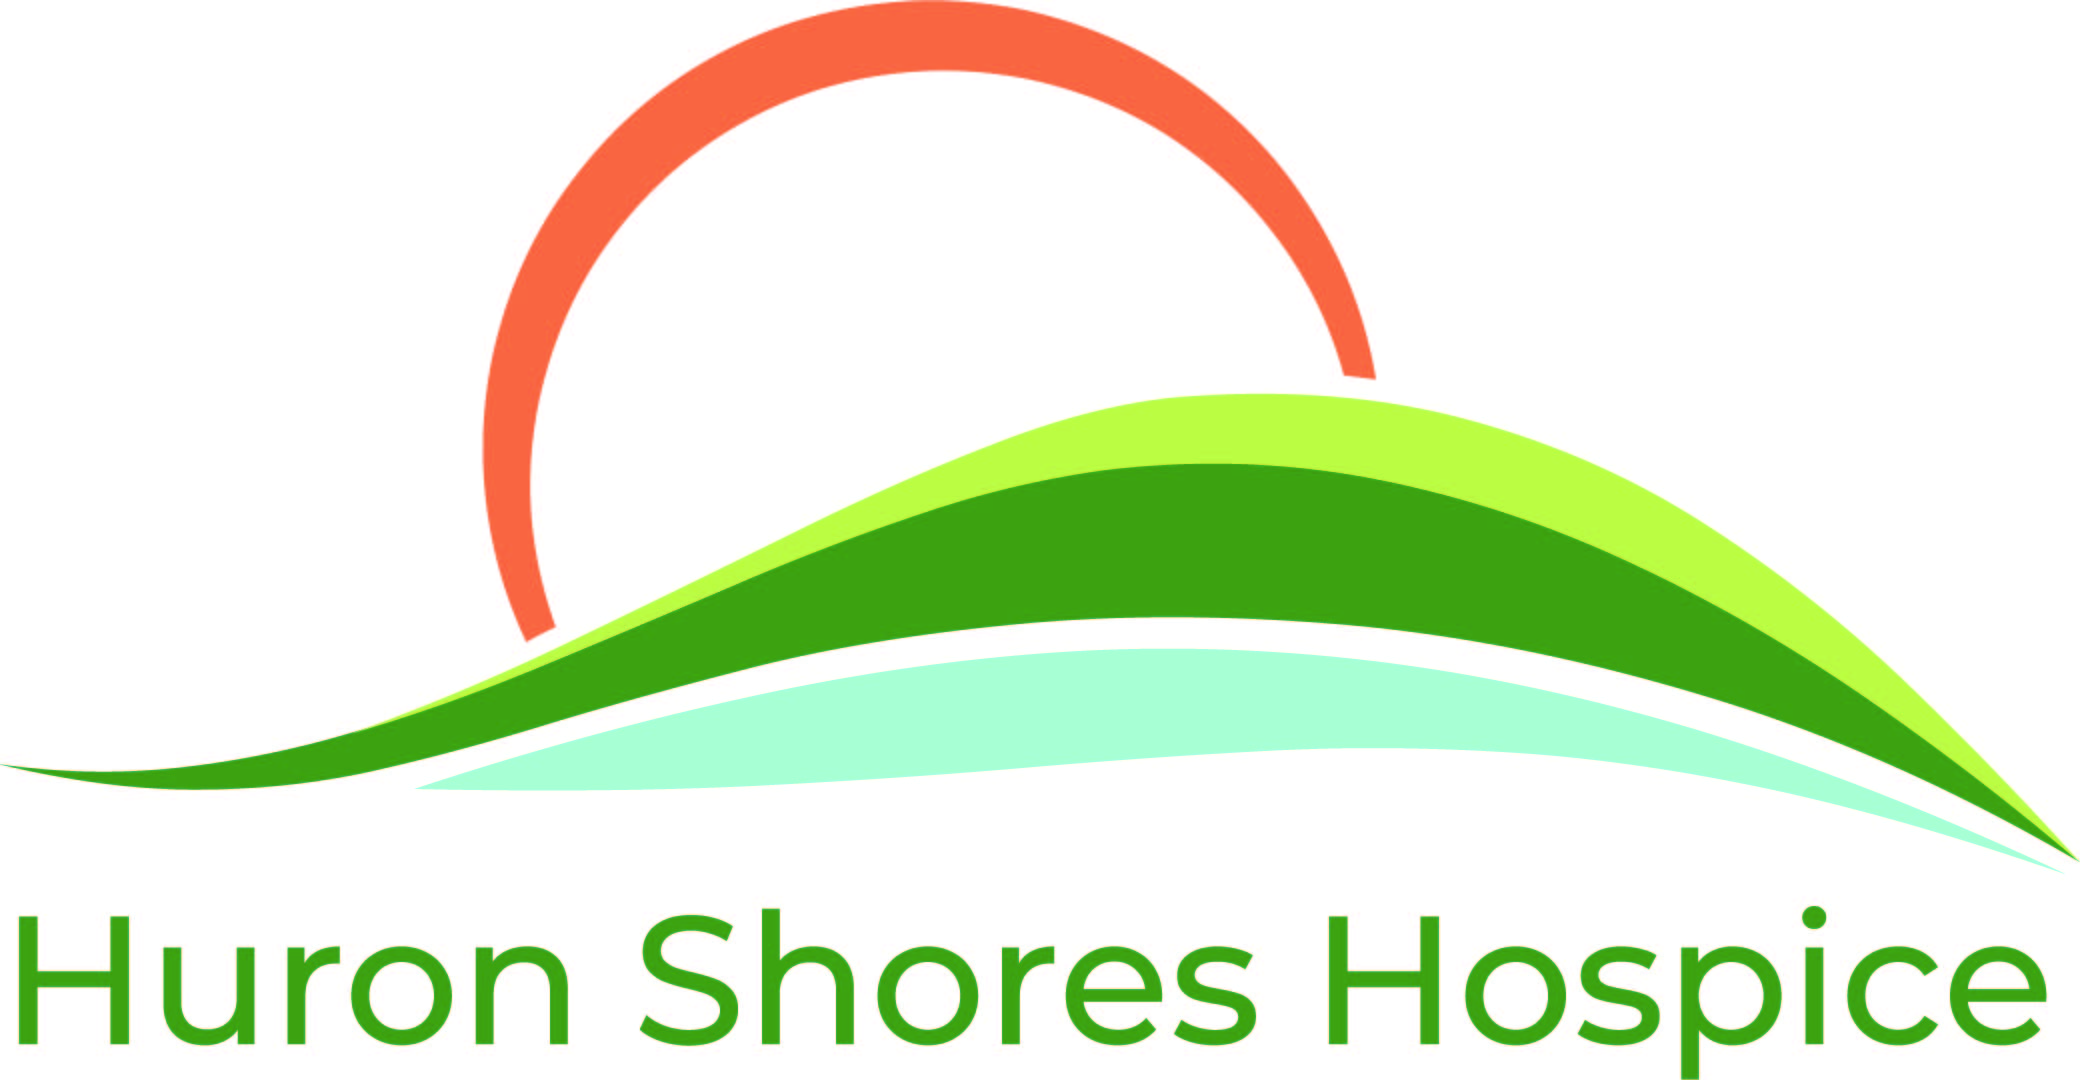 Huron Shores Hospice